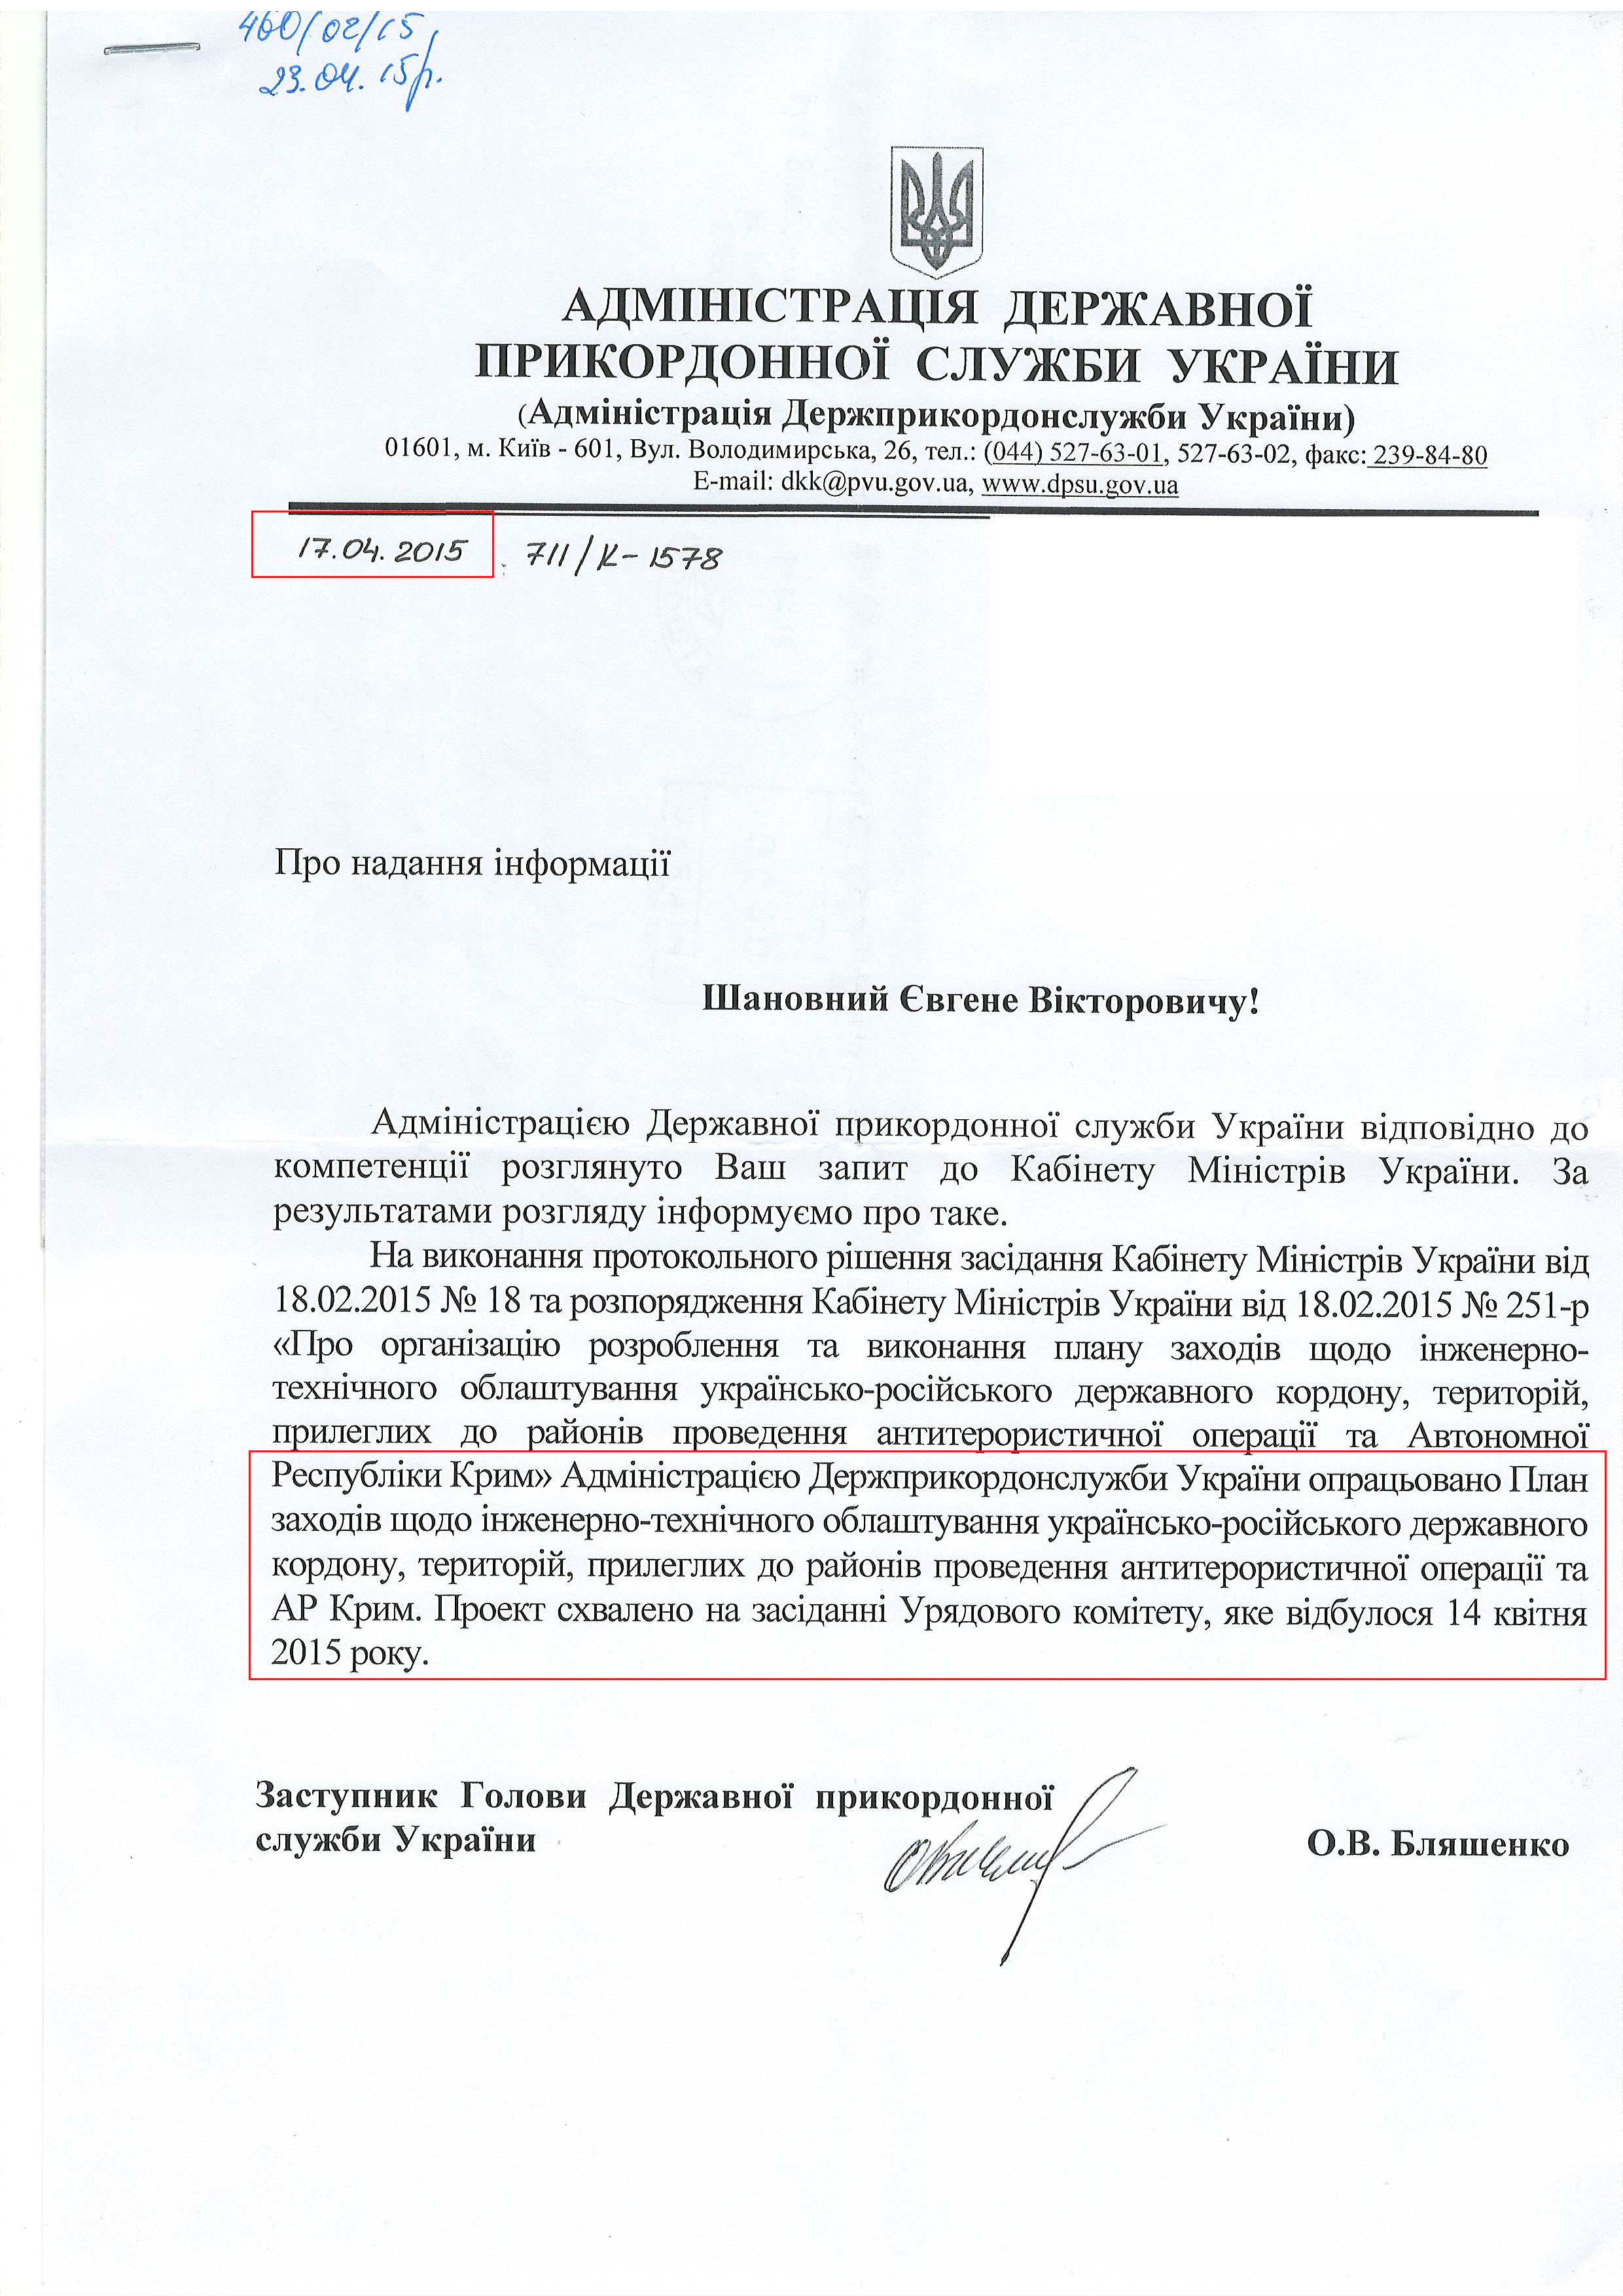 Лист адміністрації прикордонної служби України 17.04.2015